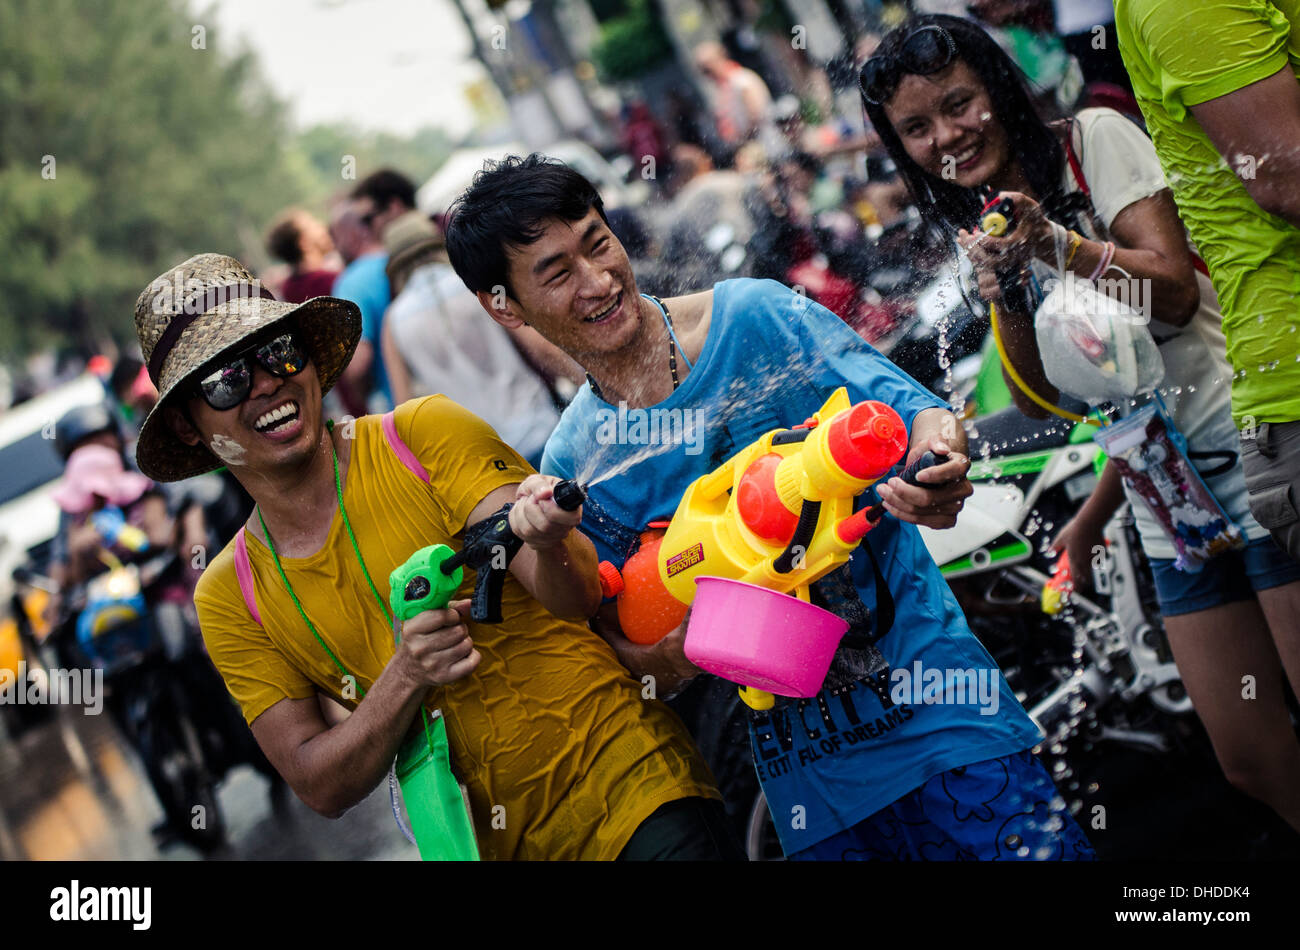 Les habitants de célébrer le Nouvel An Thaï en jetant de l'eau à l'autre, l'eau de Songkran festival, Chiang Mai, Thaïlande, Asie du Sud-Est Banque D'Images